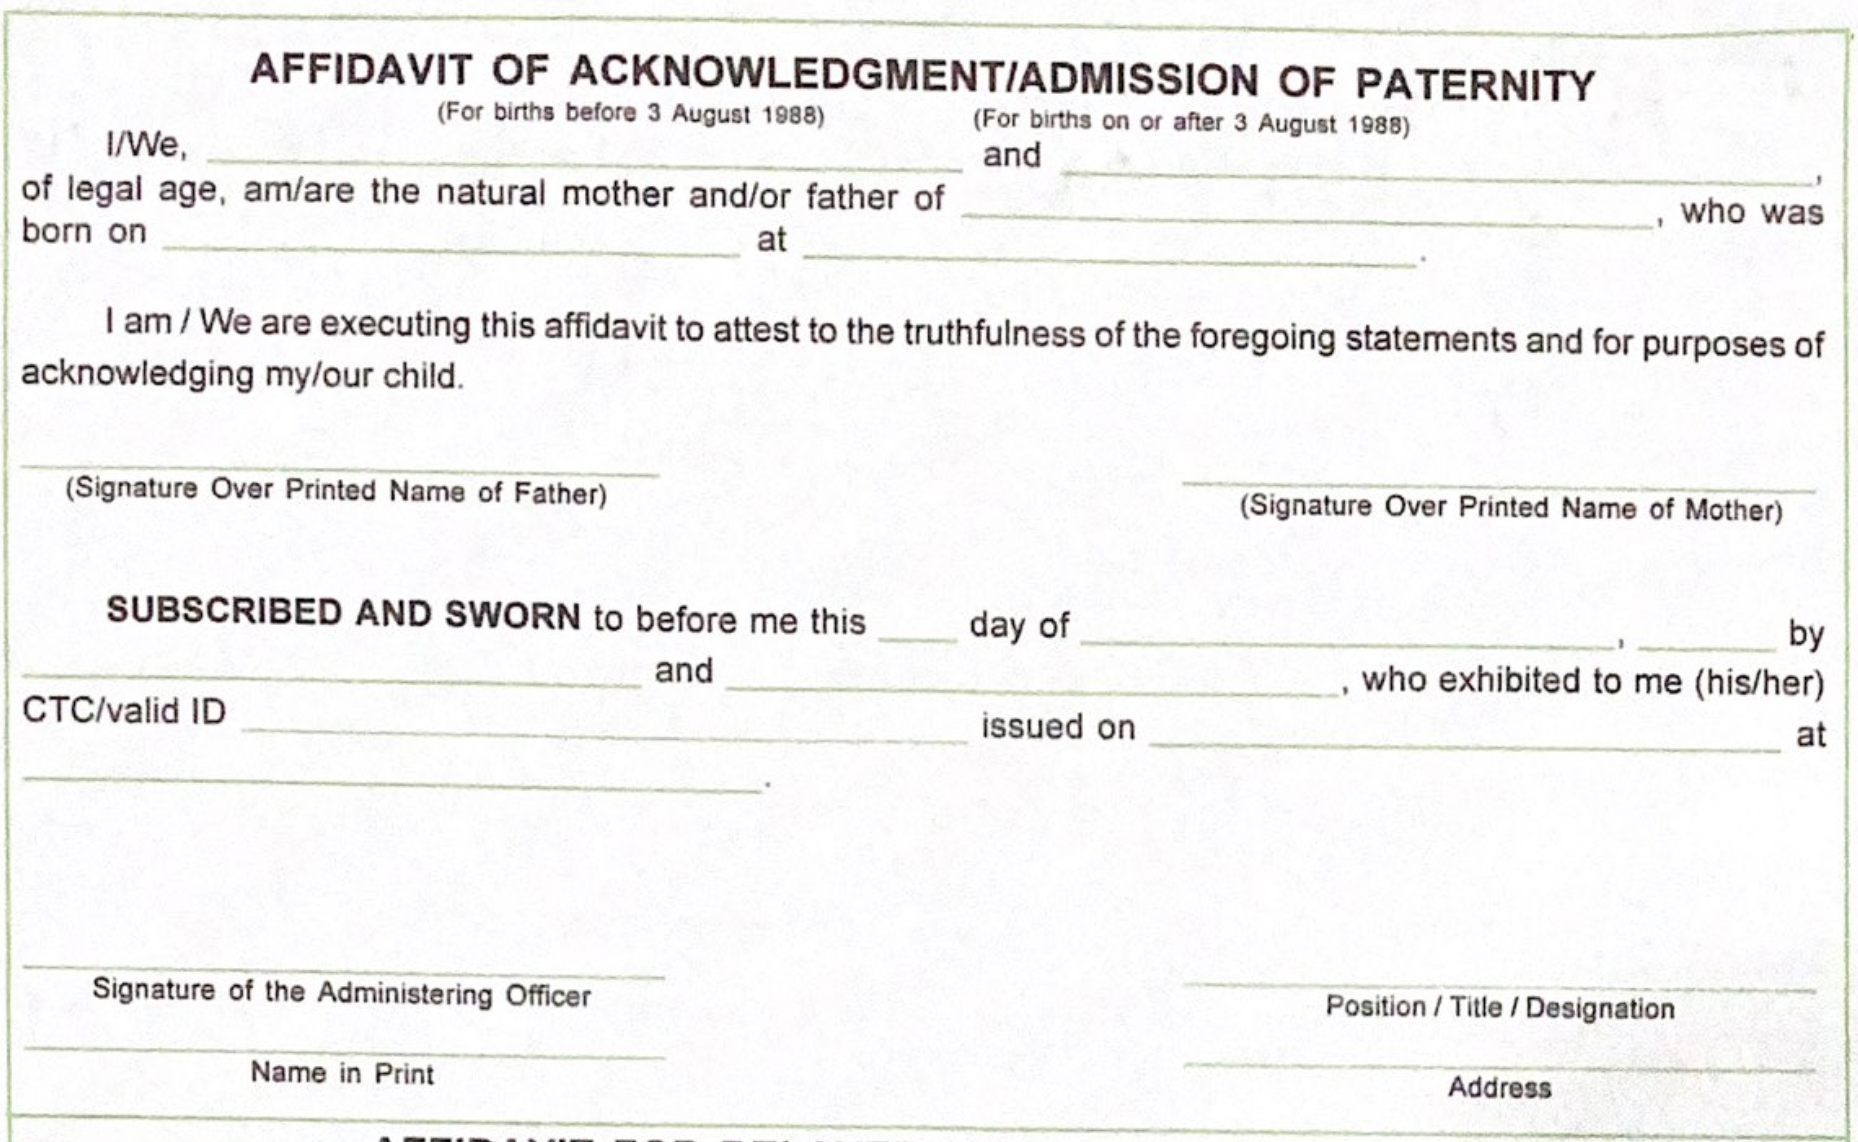 フィリピン認知宣誓供述書（Affidavit for Acknowledgement/Admission of Paternity）